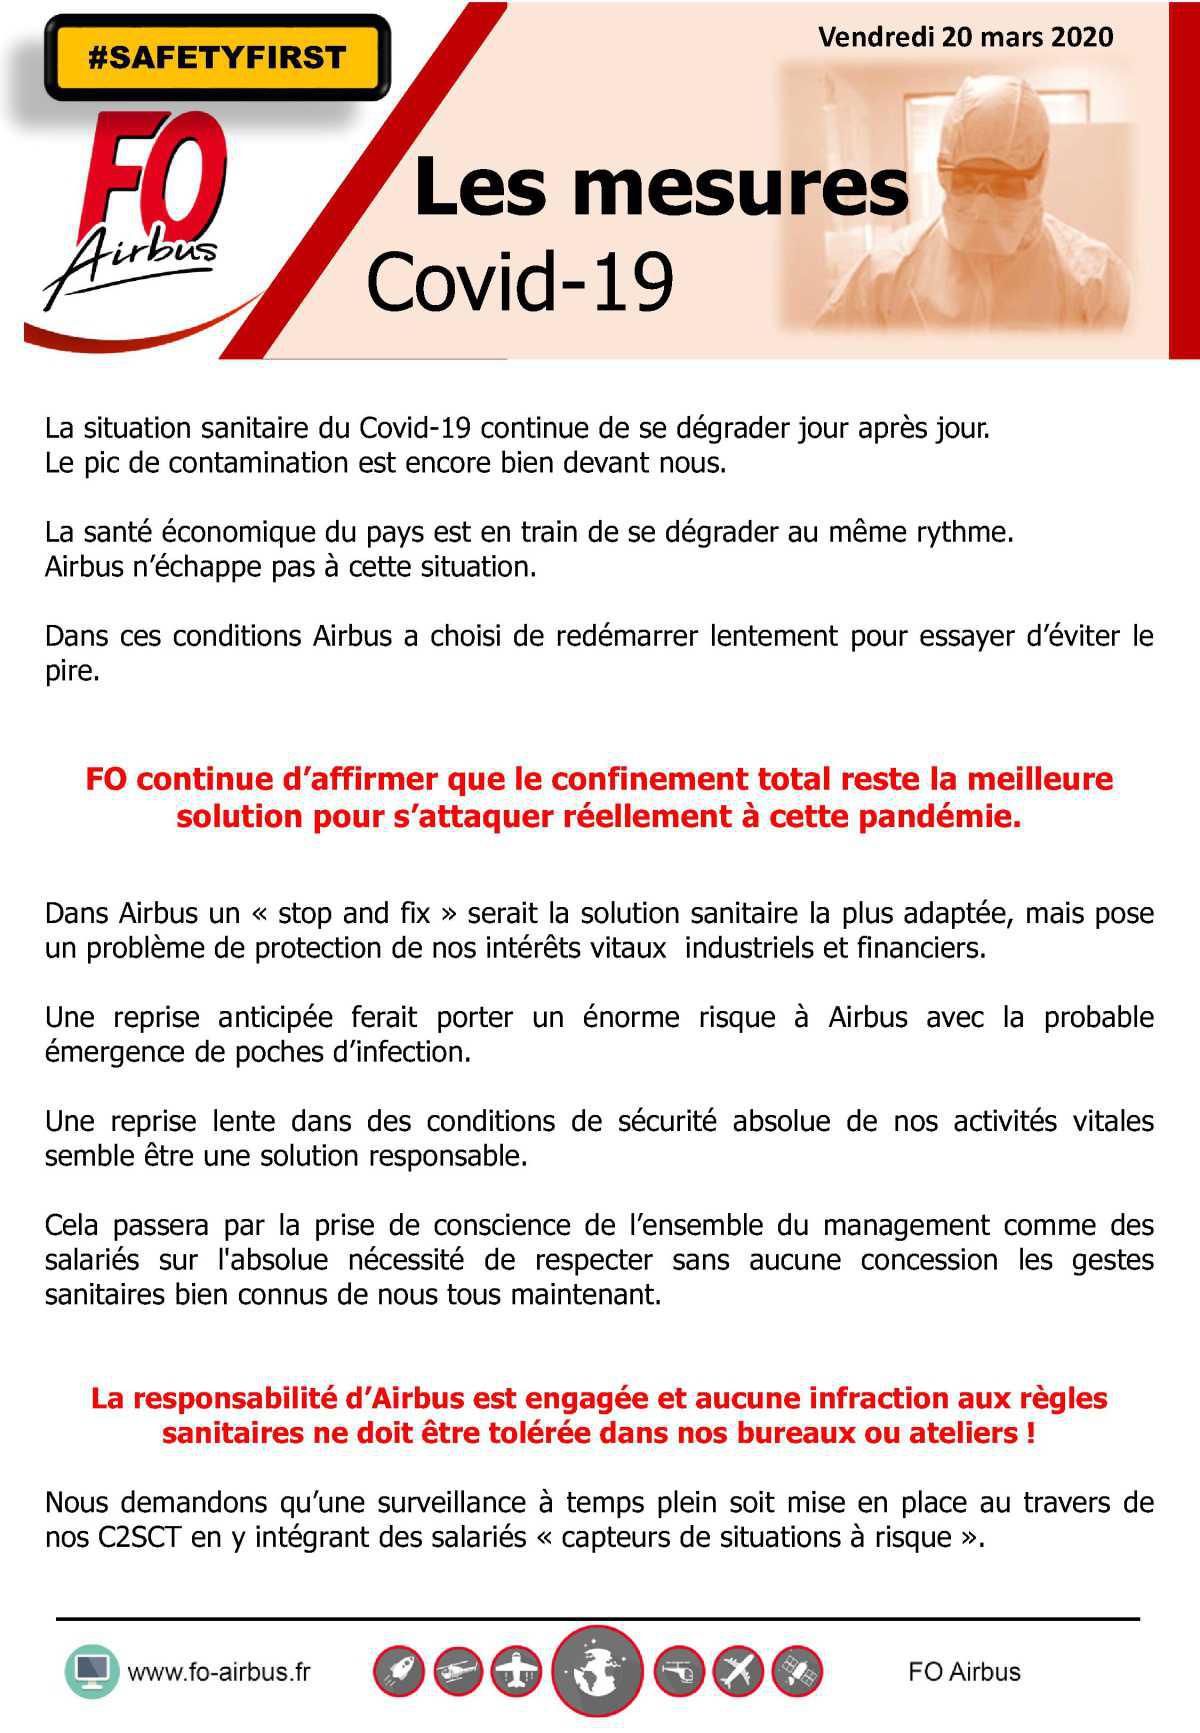 Les Mesures / Covid-19